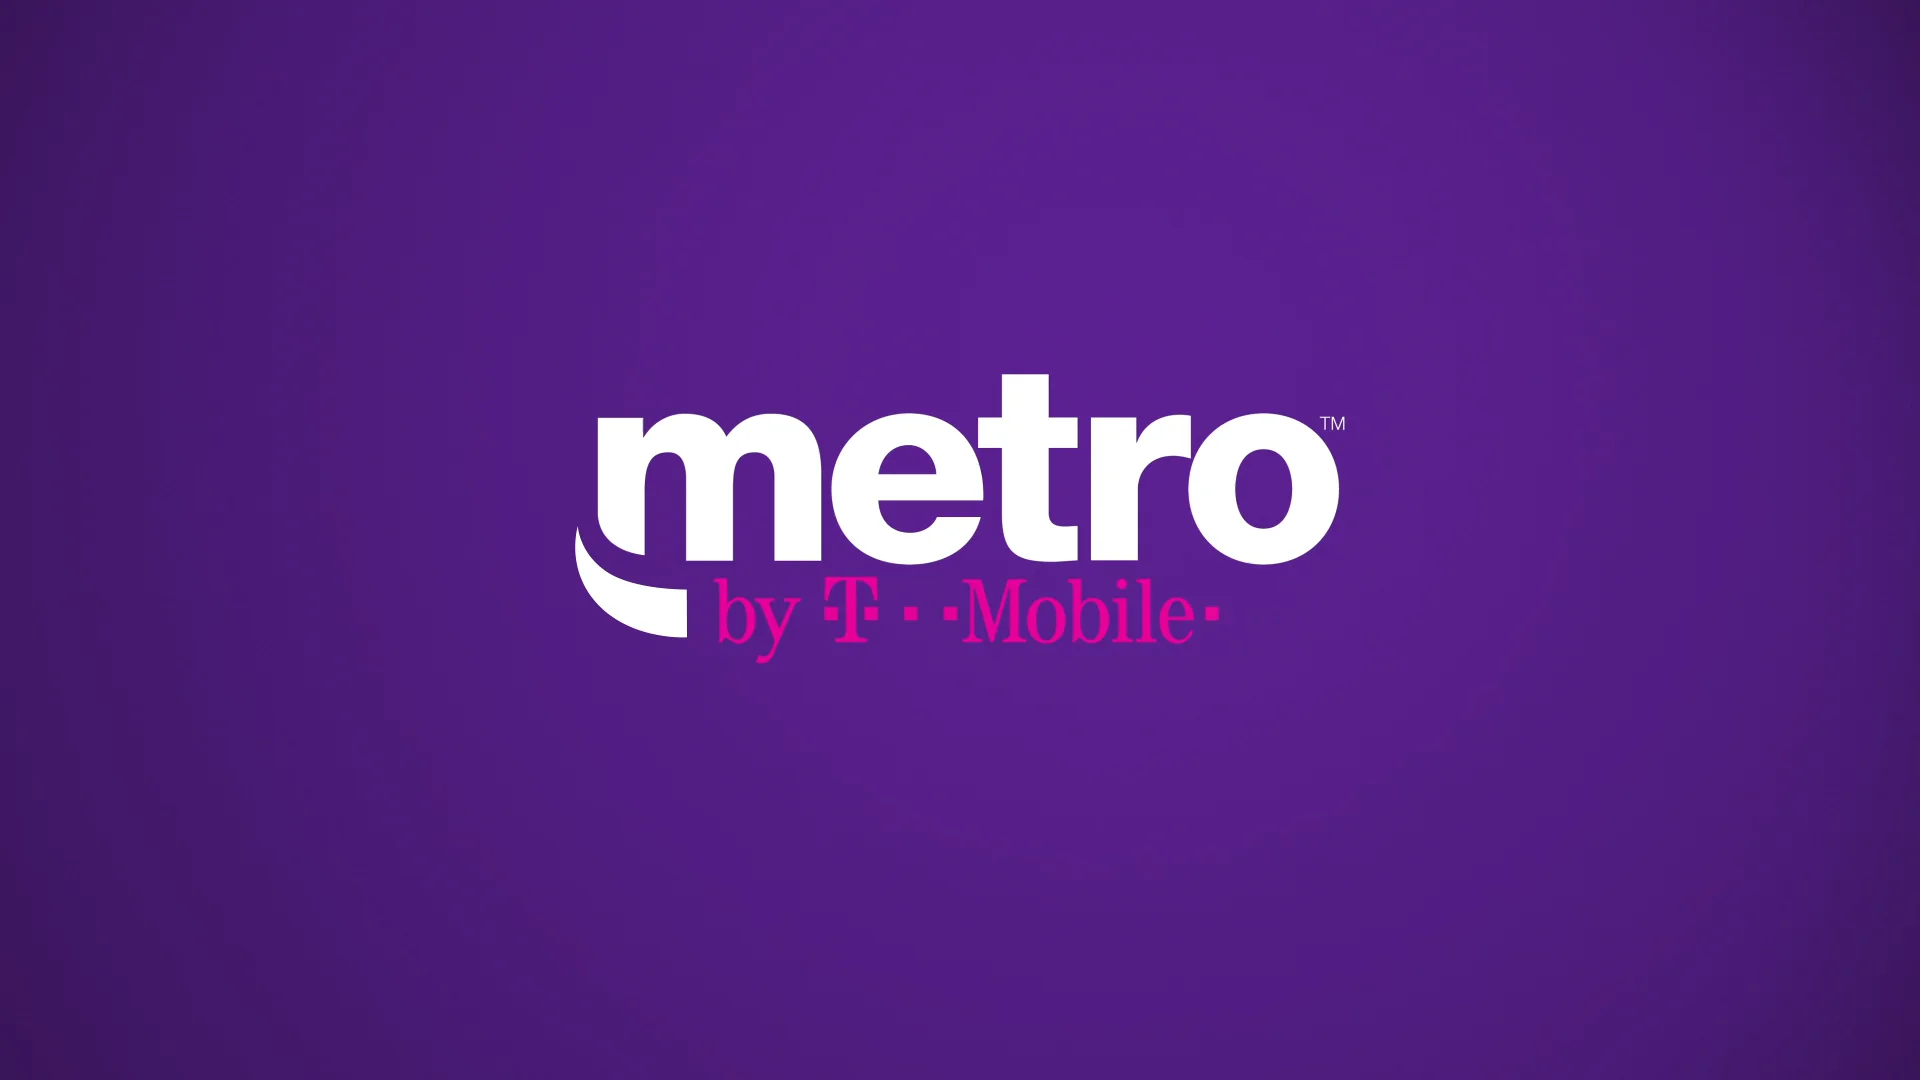 New Metro Design / Pouring Chute on Vimeo